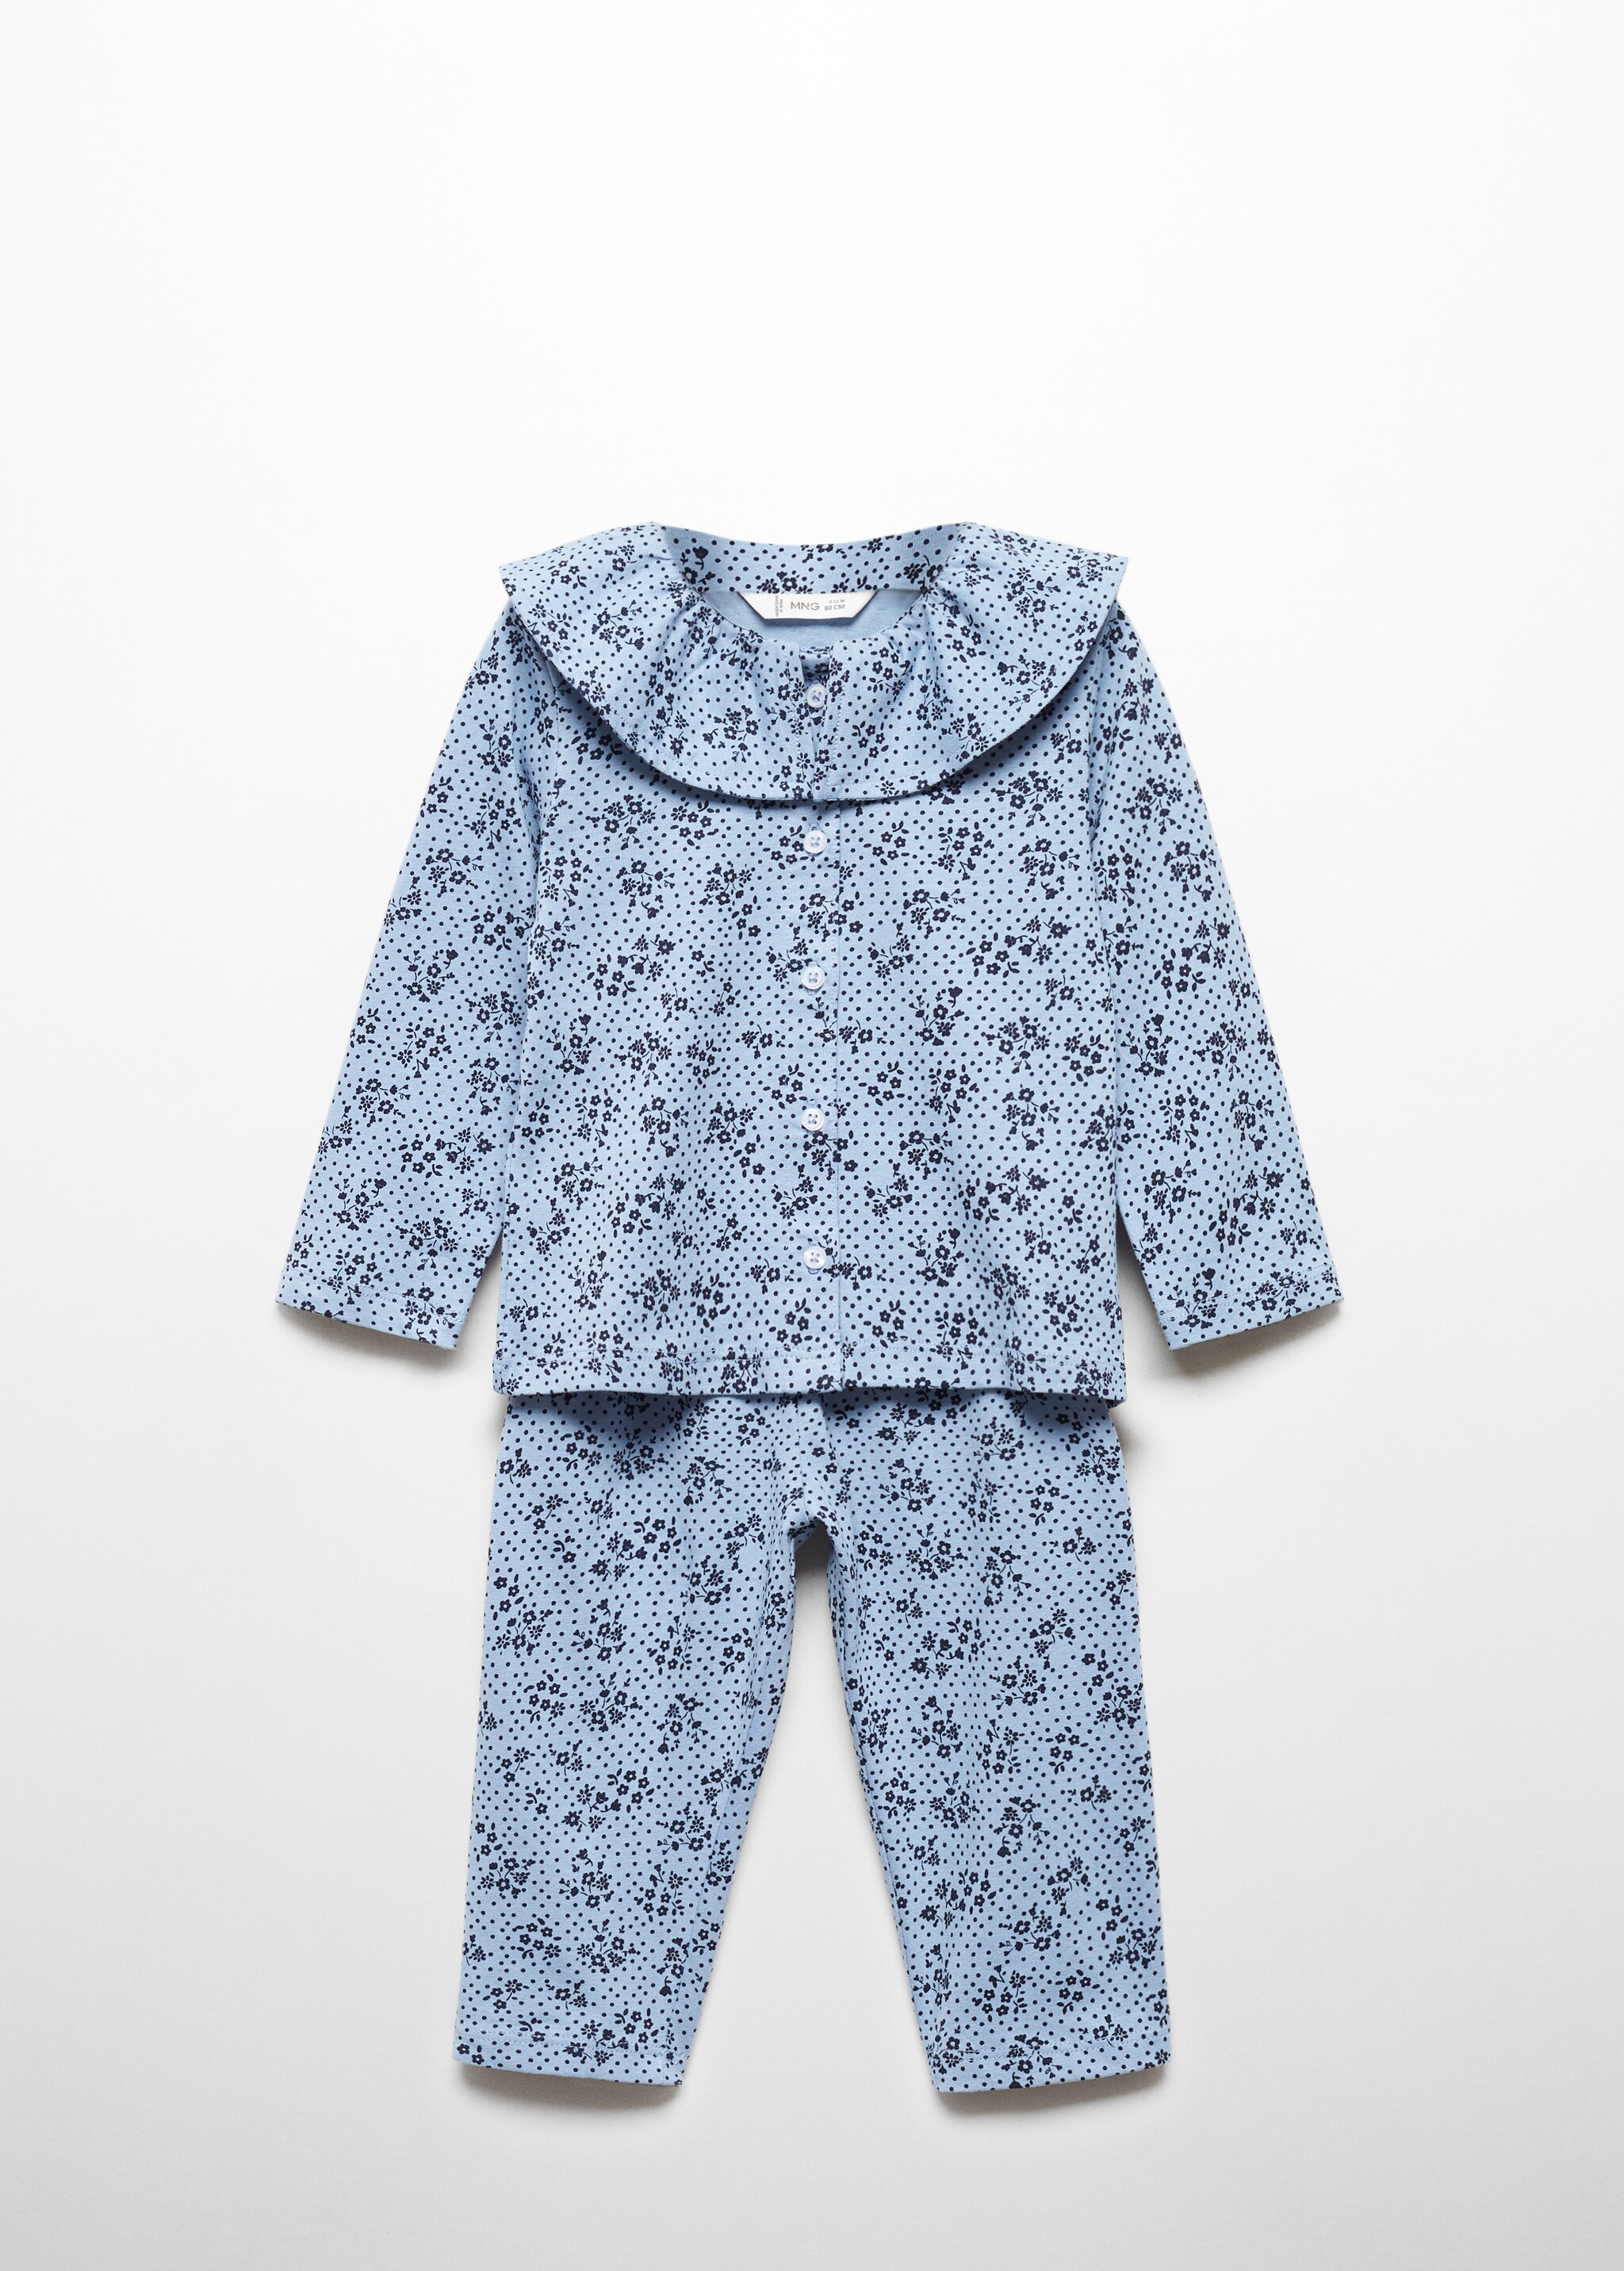 Pijama algodão estampado - Artigo sem modelo